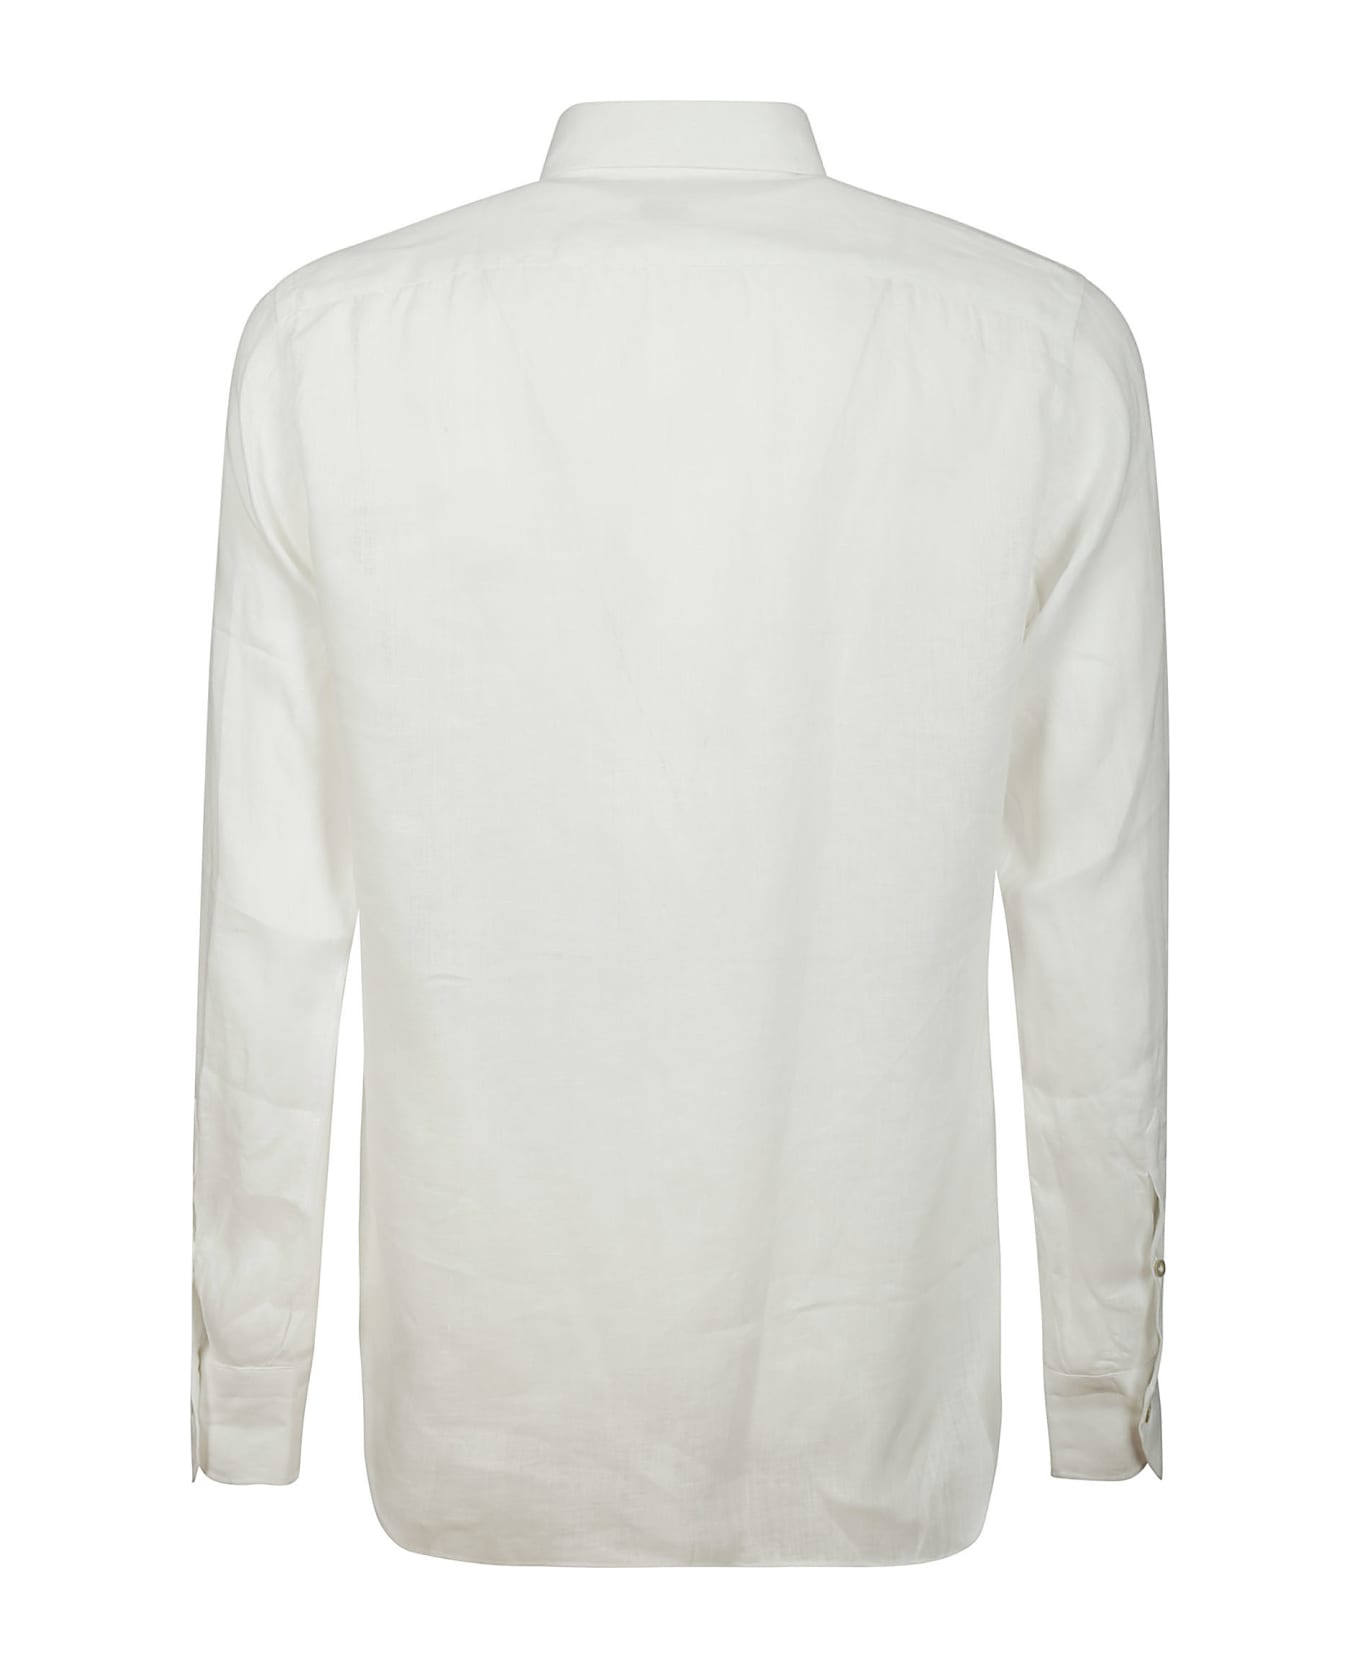 Borriello Napoli Shirt - White